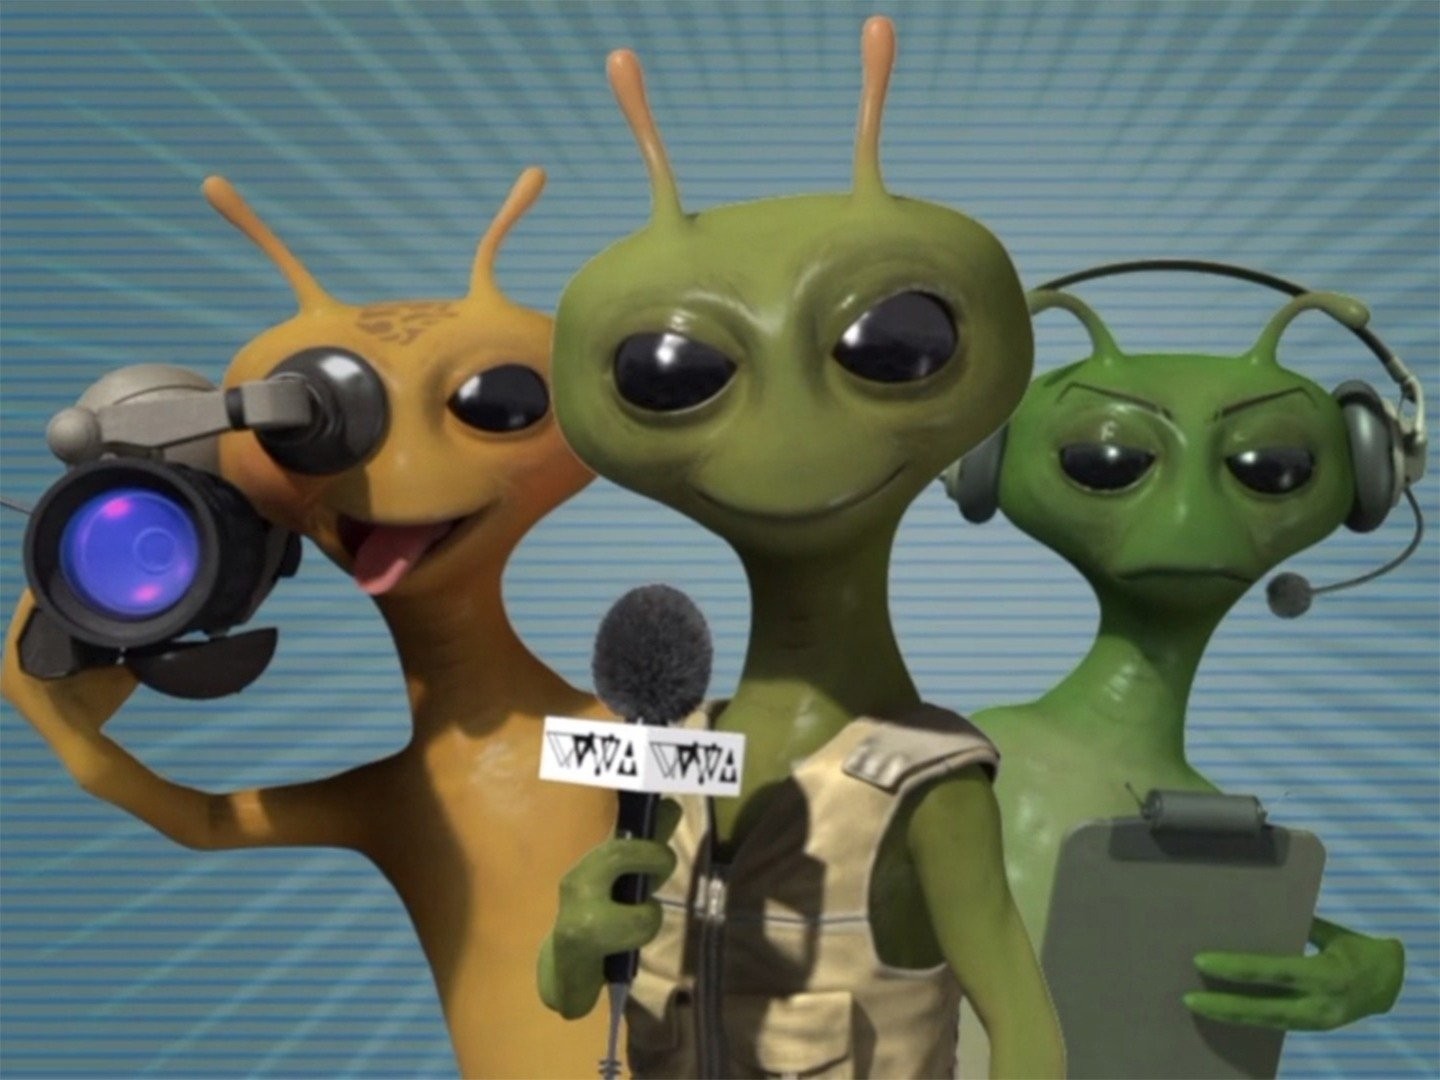 Alien TV  Skip the Offensive Content With VidAngel